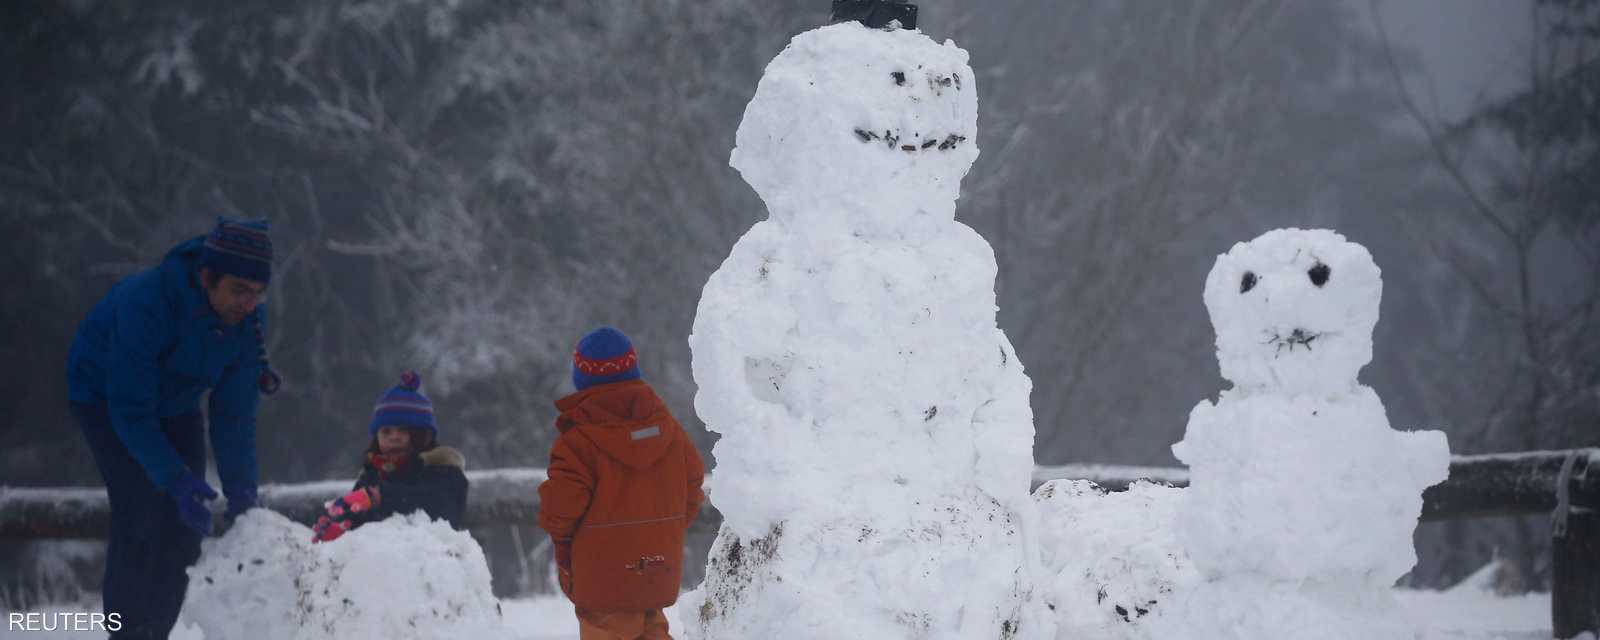 رجل الثلج قصة.. عريقة في مغازلة الثلوج